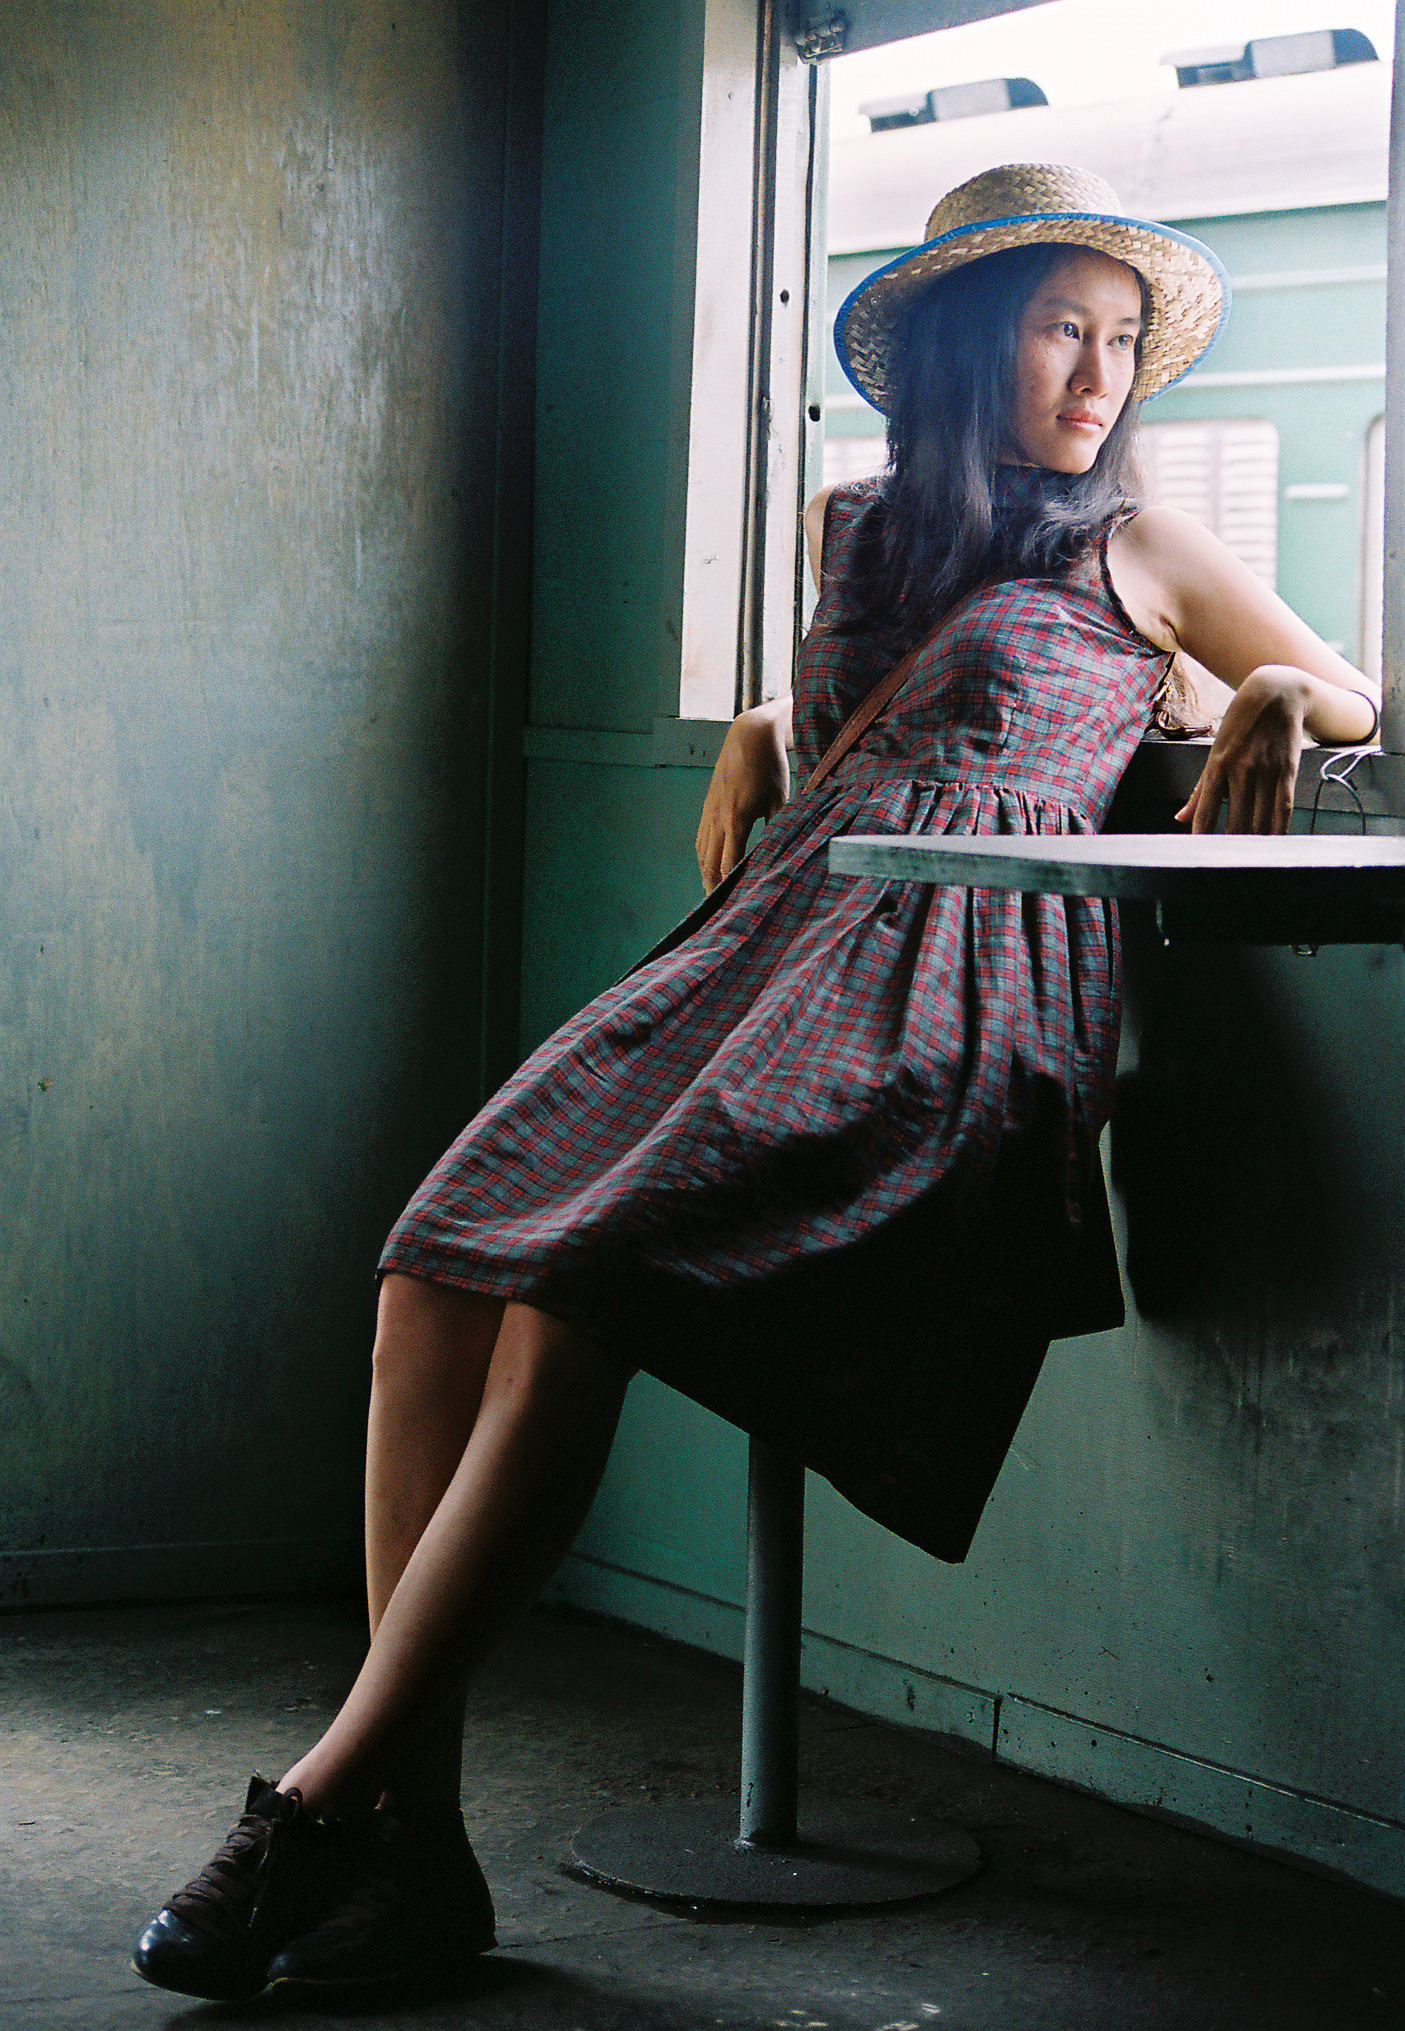 無料写真素材 人物 女性アジア 女性座る 帽子 ワンピース ドレス ベトナム人画像素材なら 無料 フリー写真素材のフリーフォト